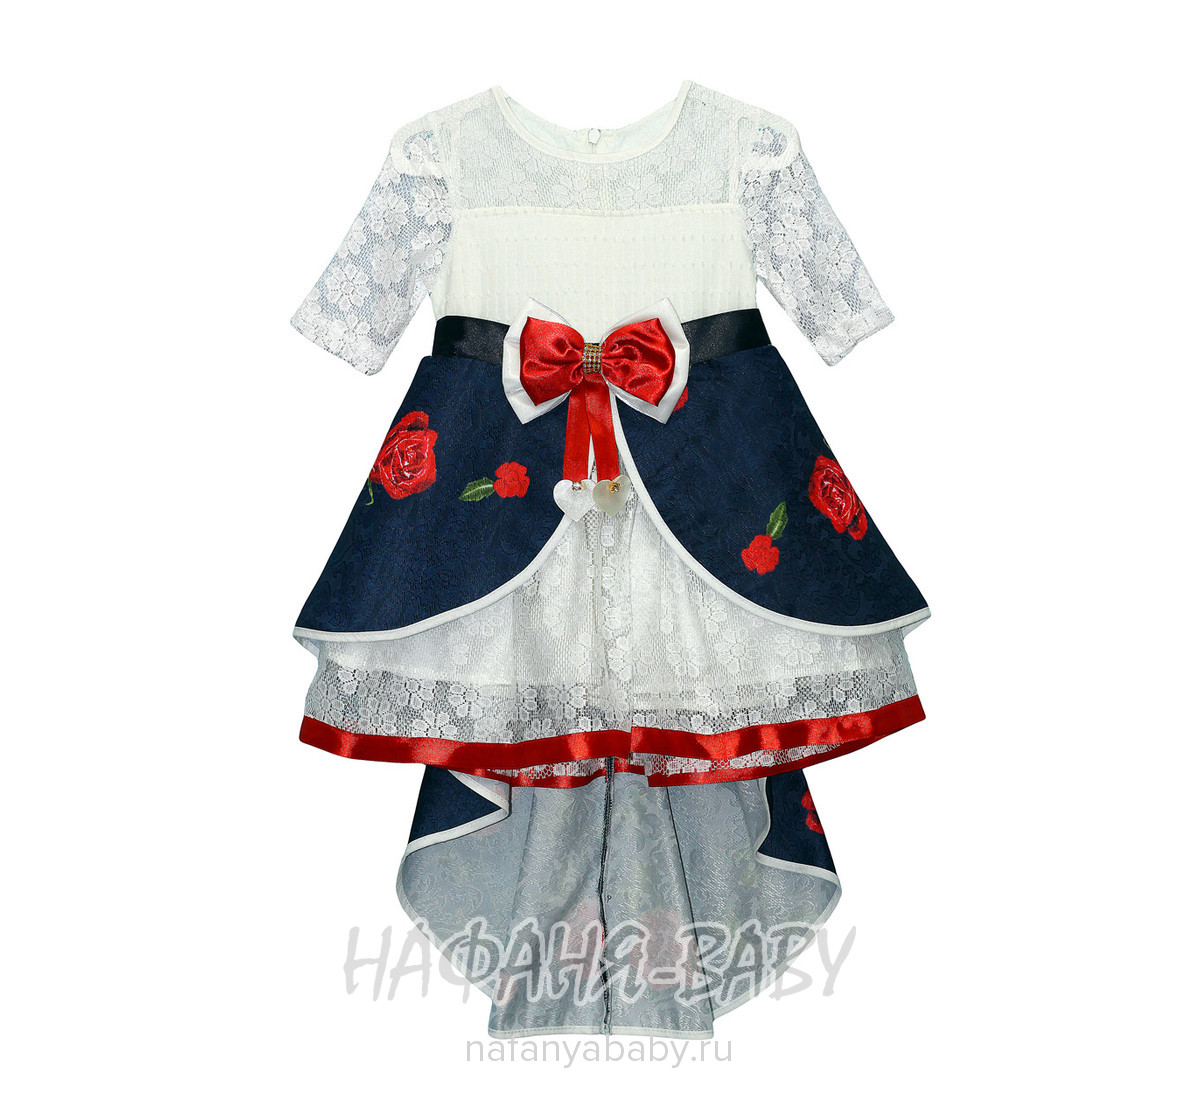 Детское нарядное платье Miss GOLDEN, купить в интернет магазине Нафаня. арт: 2116.